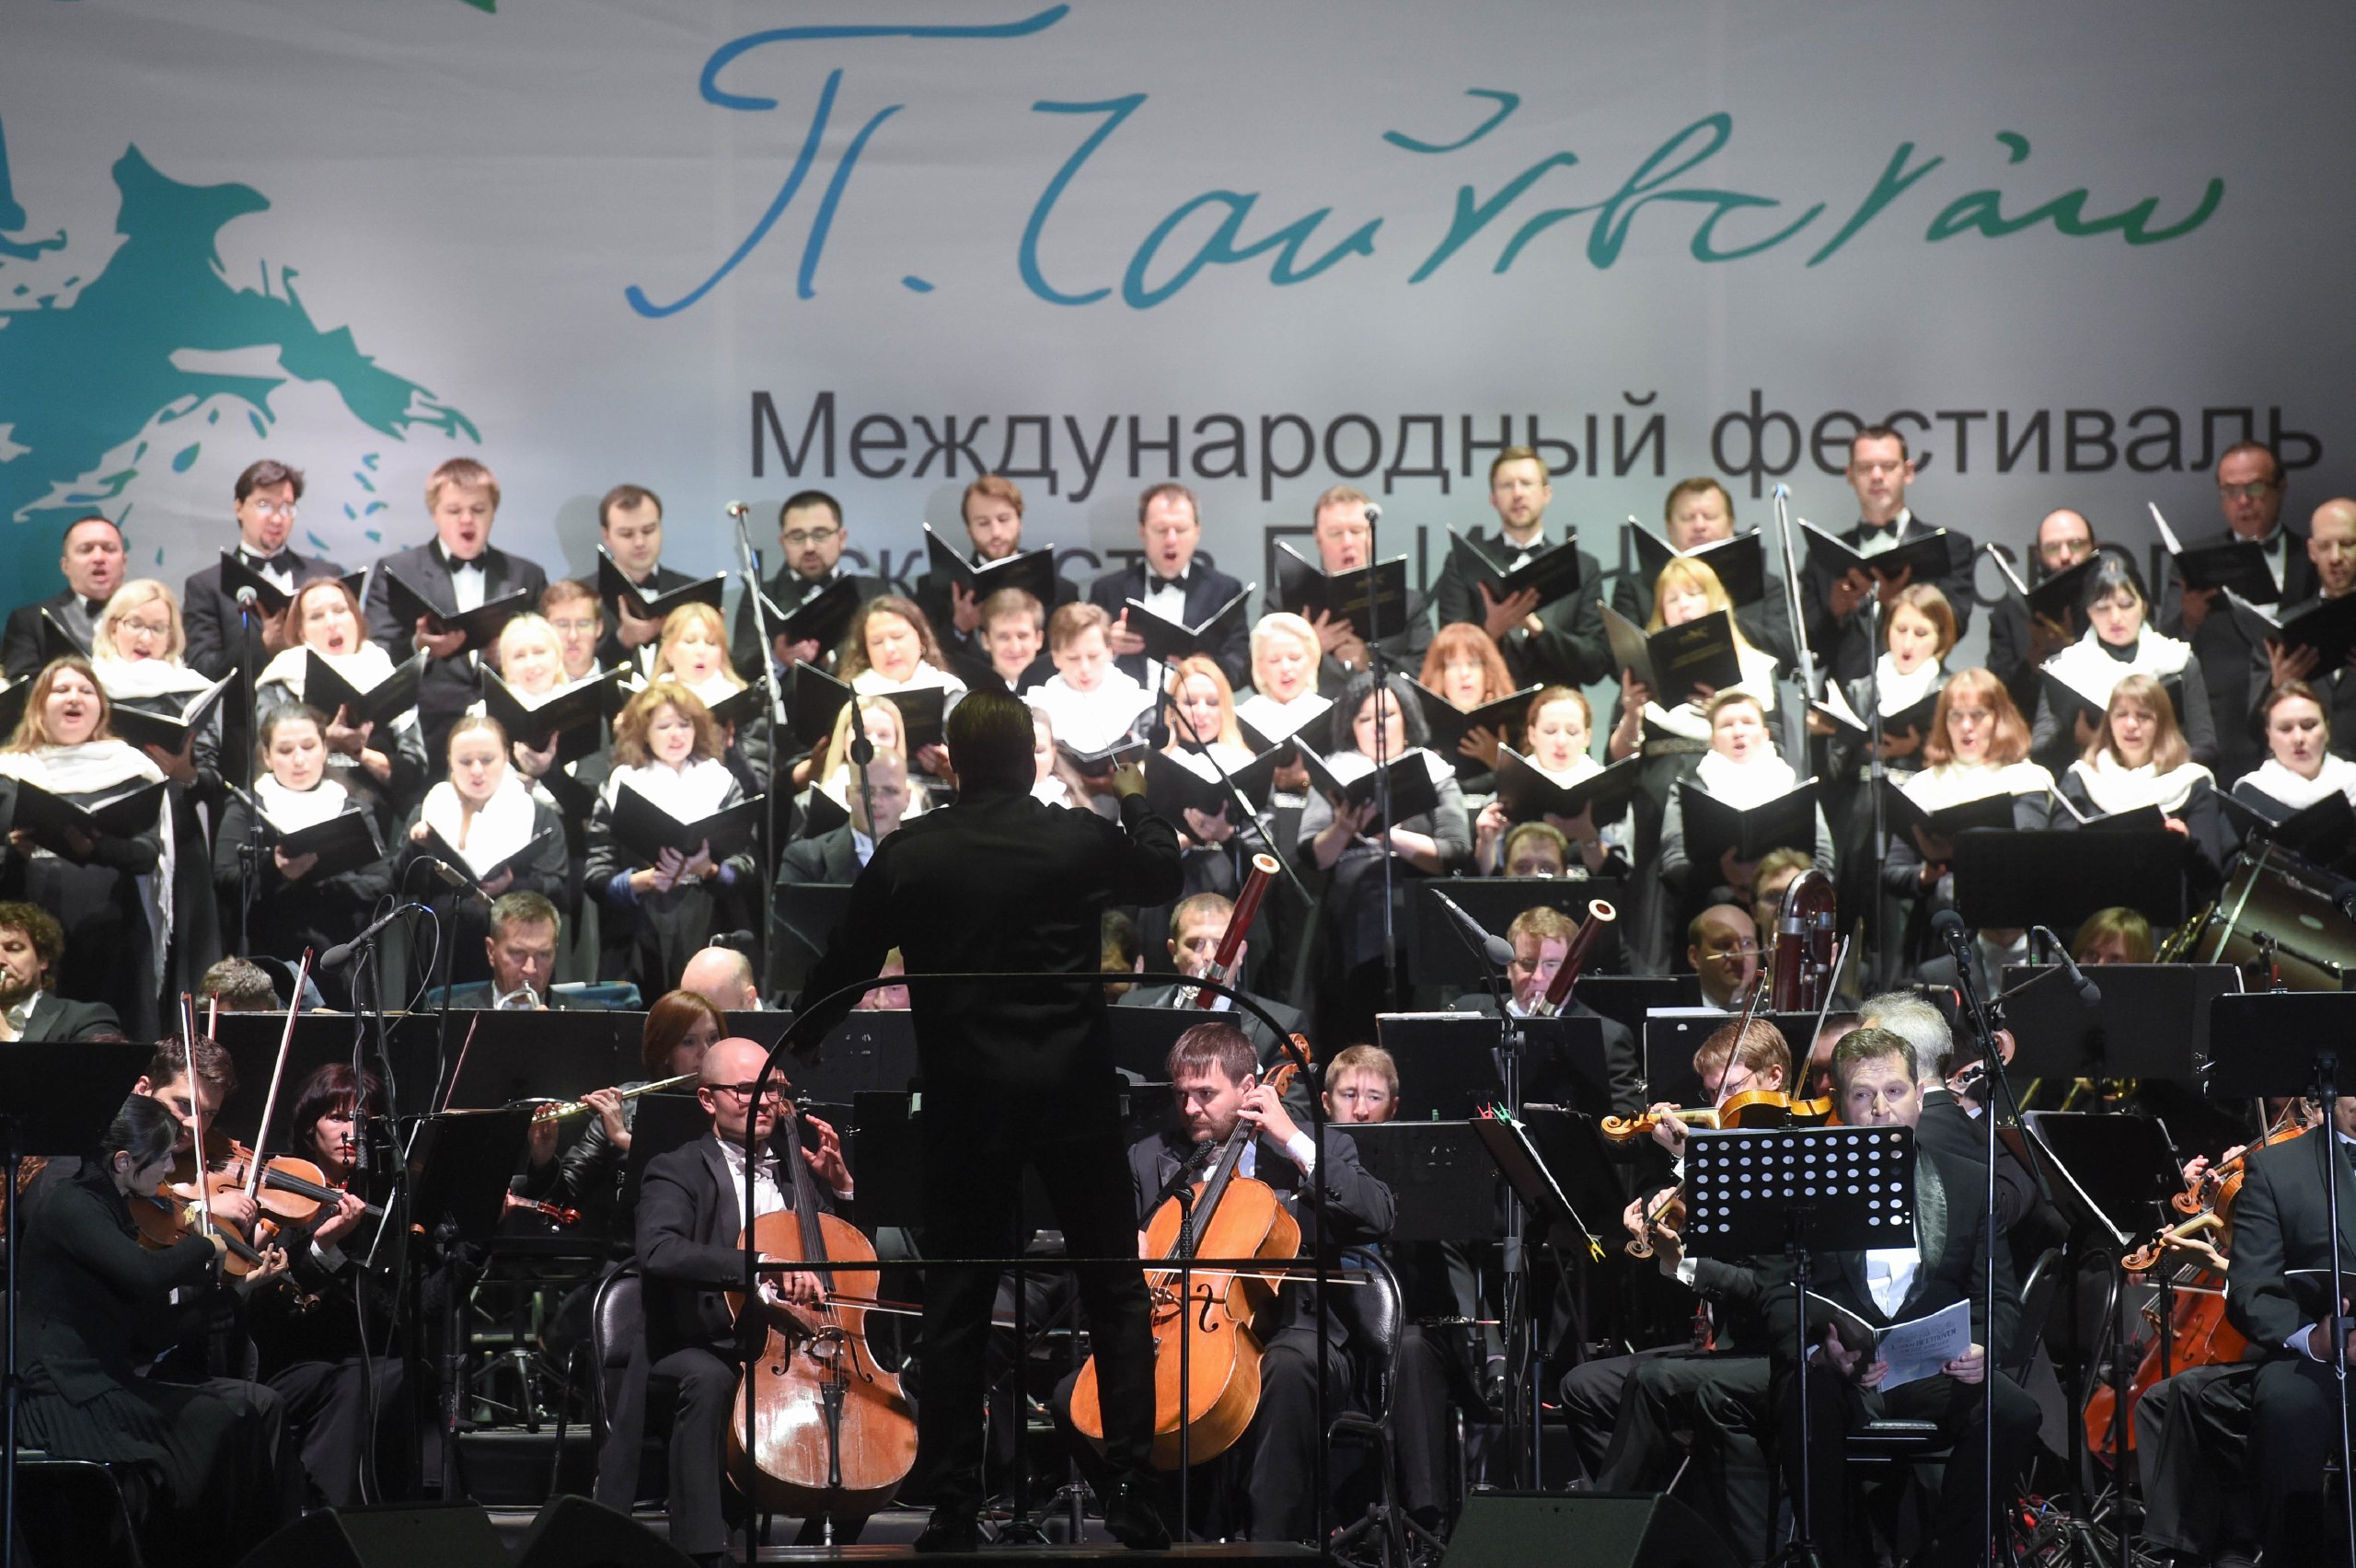 В этом году фестиваль искусств П.И. Чайковского, как обычно, пройдет на территории Государственного мемориального музыкального музея-заповедника П.И. Чайковского в Клину